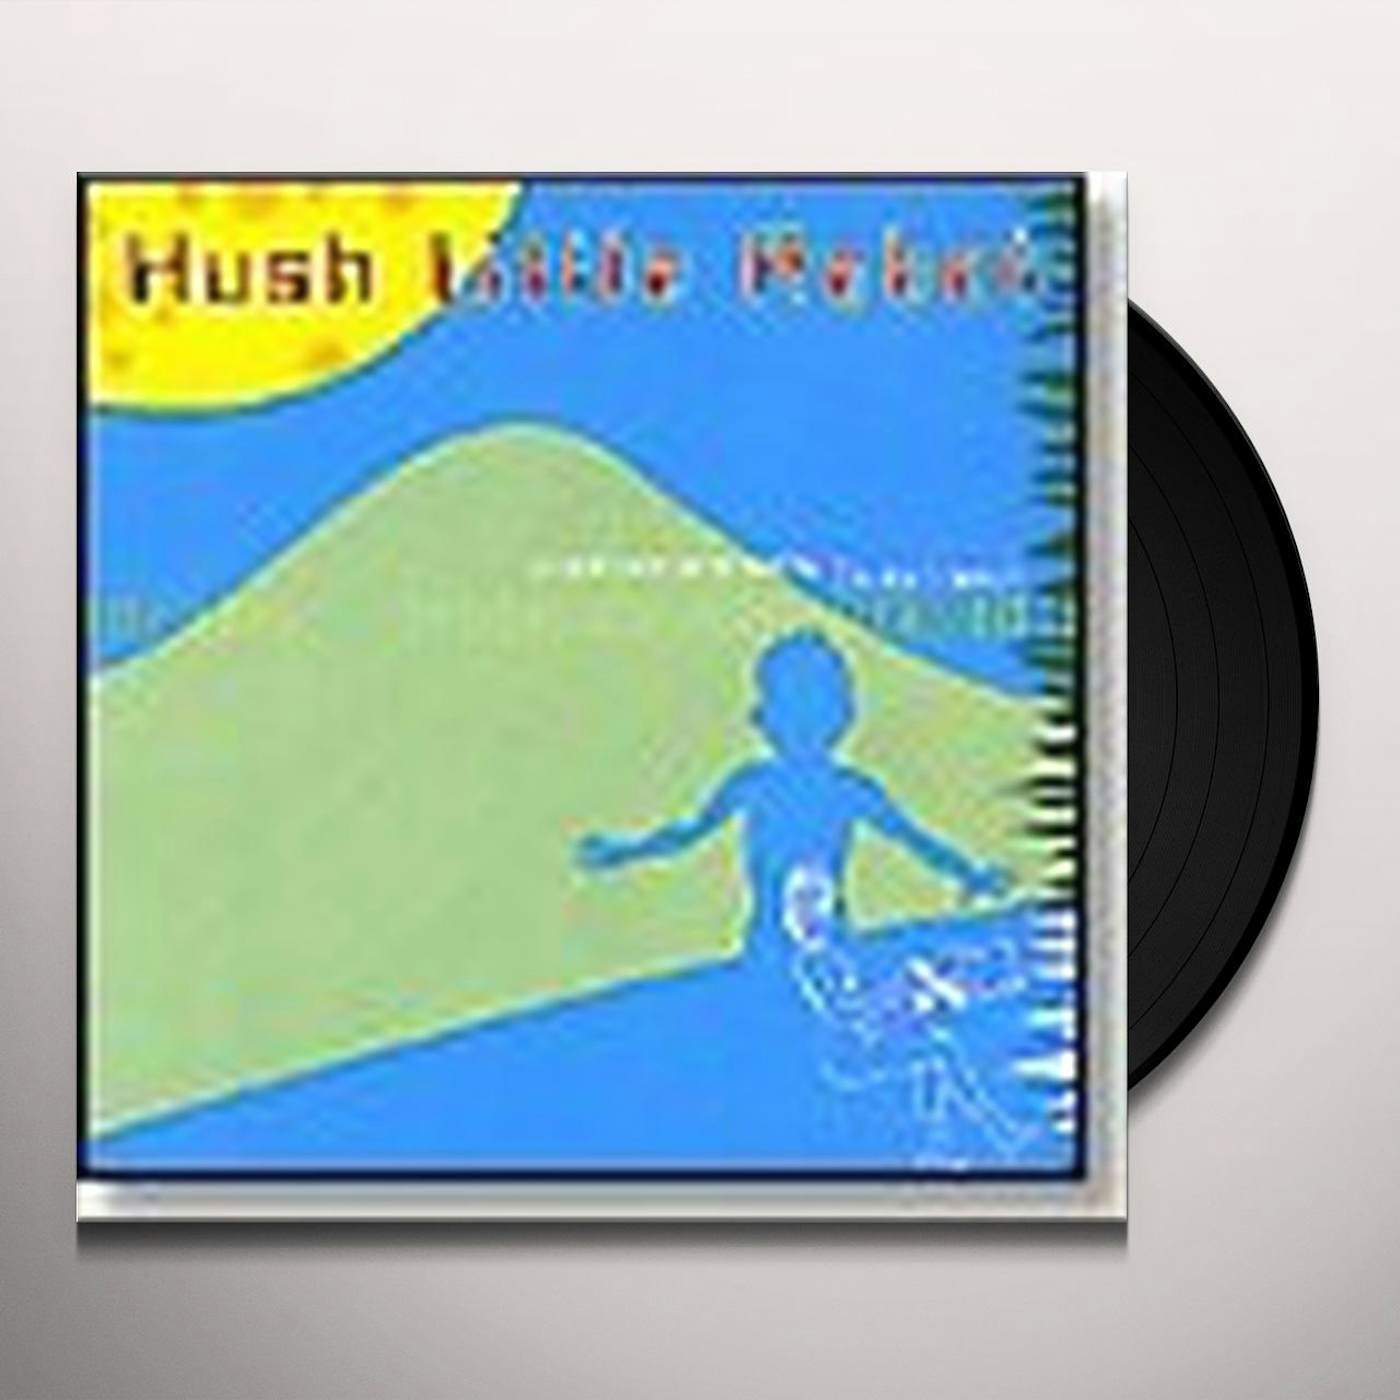 Bruce Haack HUSH LITTLE Vinyl Record